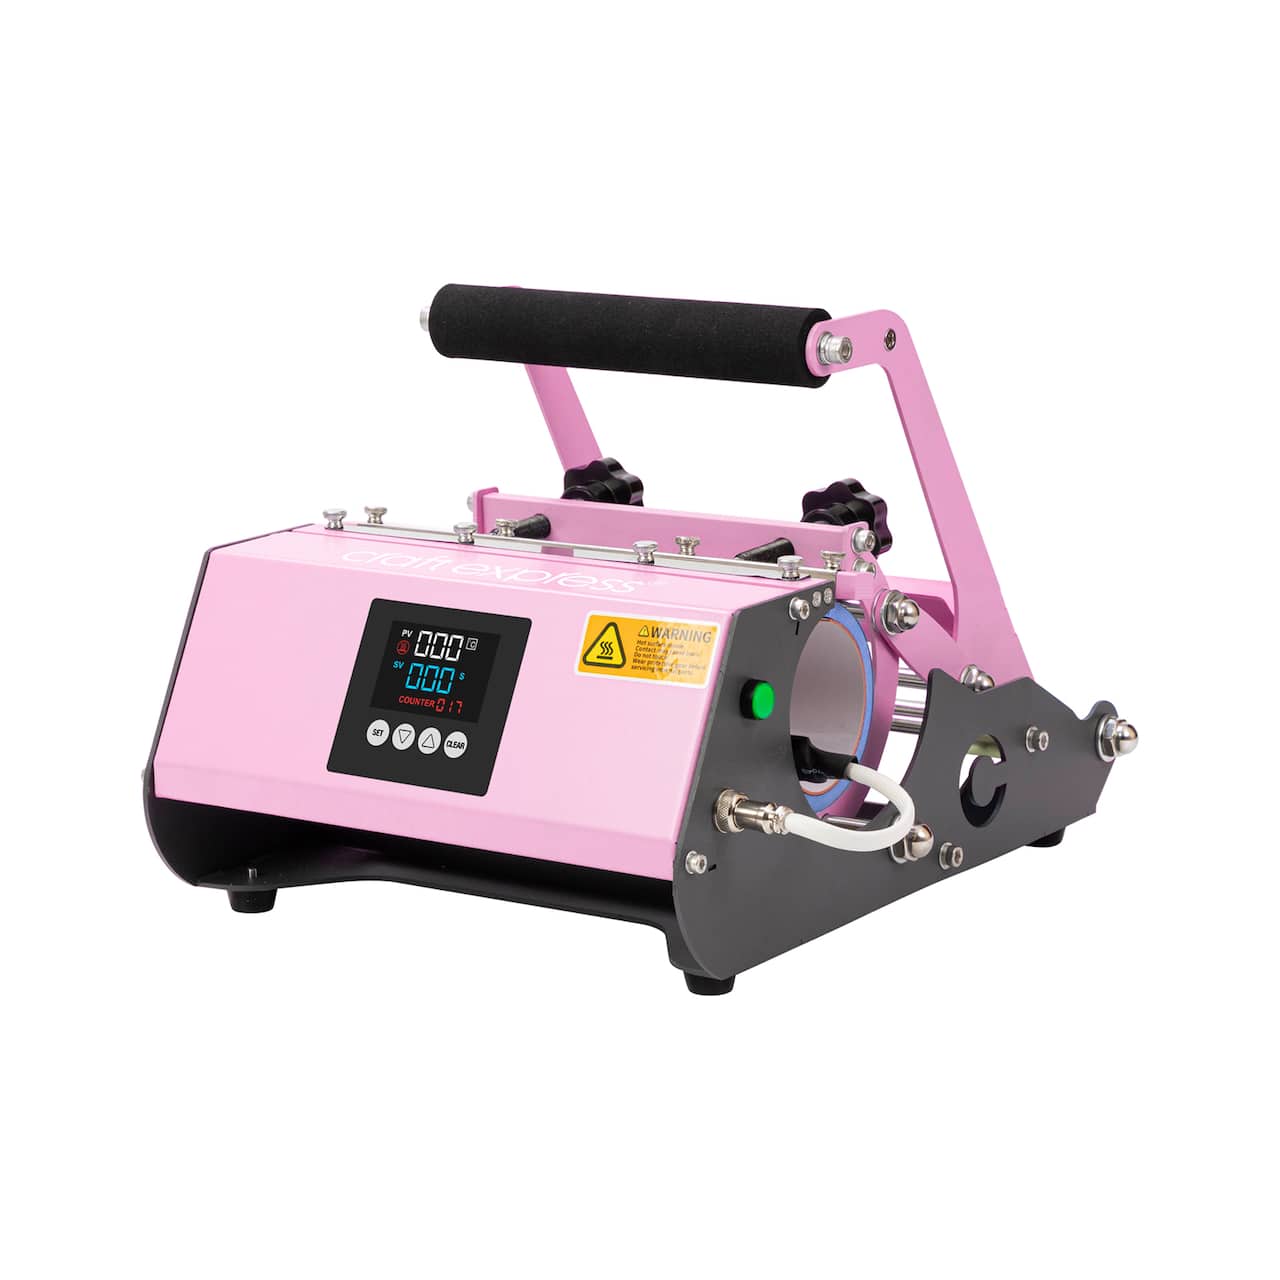 Craft Express® Pink Elite Pro Tumbler Heat Press